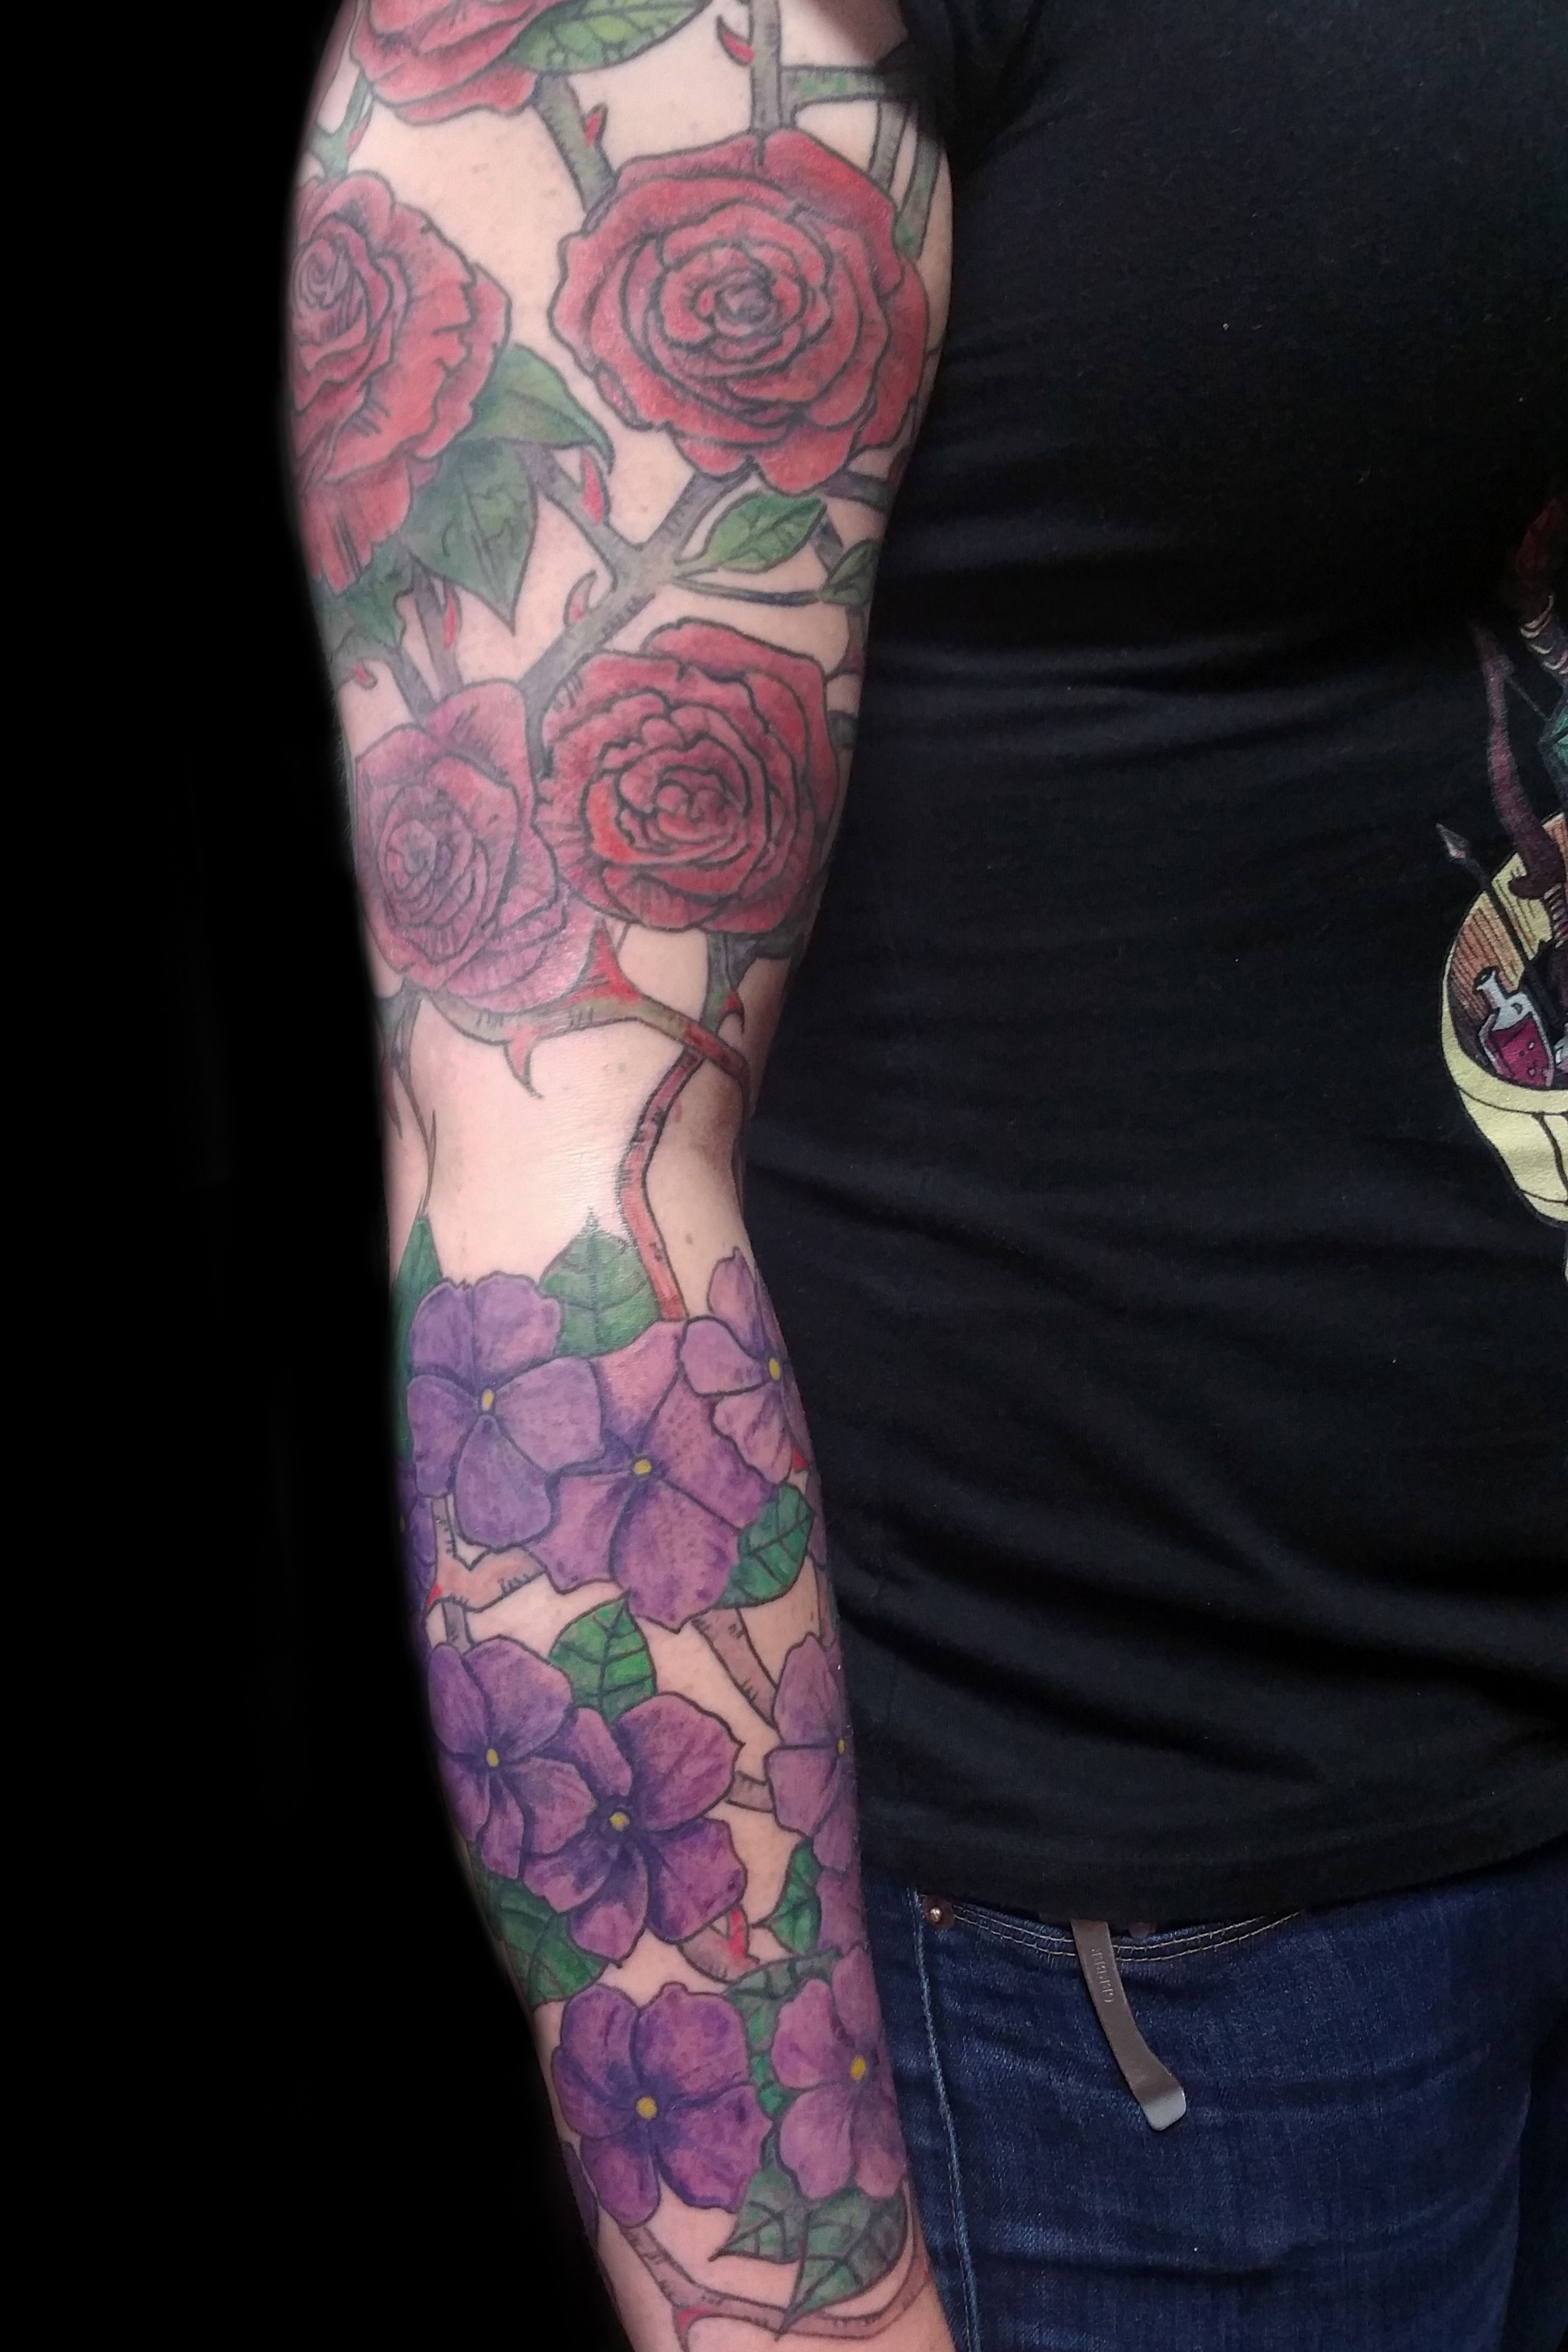 Jacke Michaelsen  Tattoo  RosesLotusVioletIris  Facebook